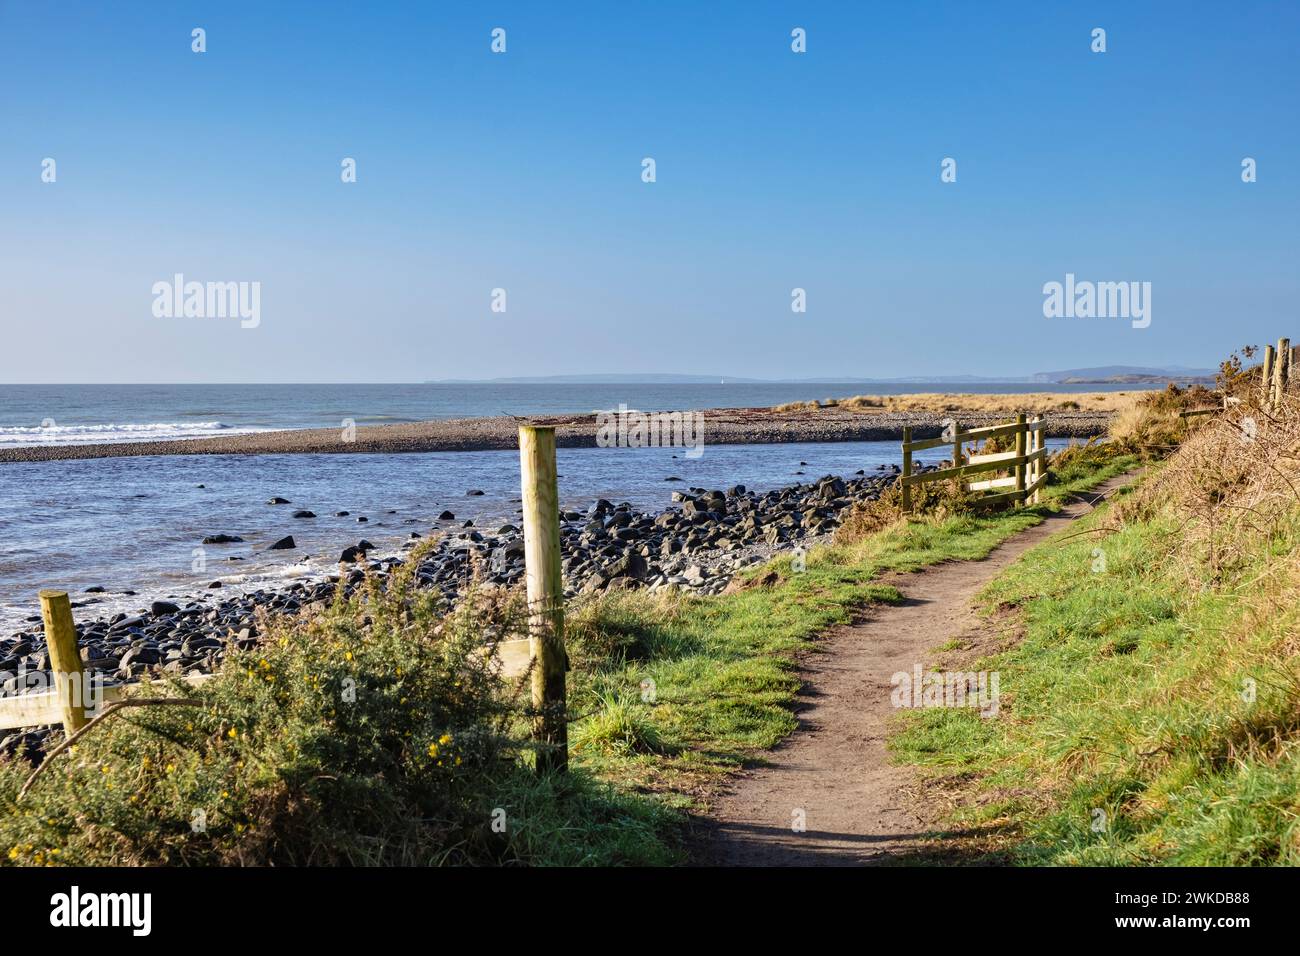 Wales coastal path along the coast near Criccieth, Llyn Peninsula, Gwynedd, north Wales, UK, Britain, Europe Stock Photo